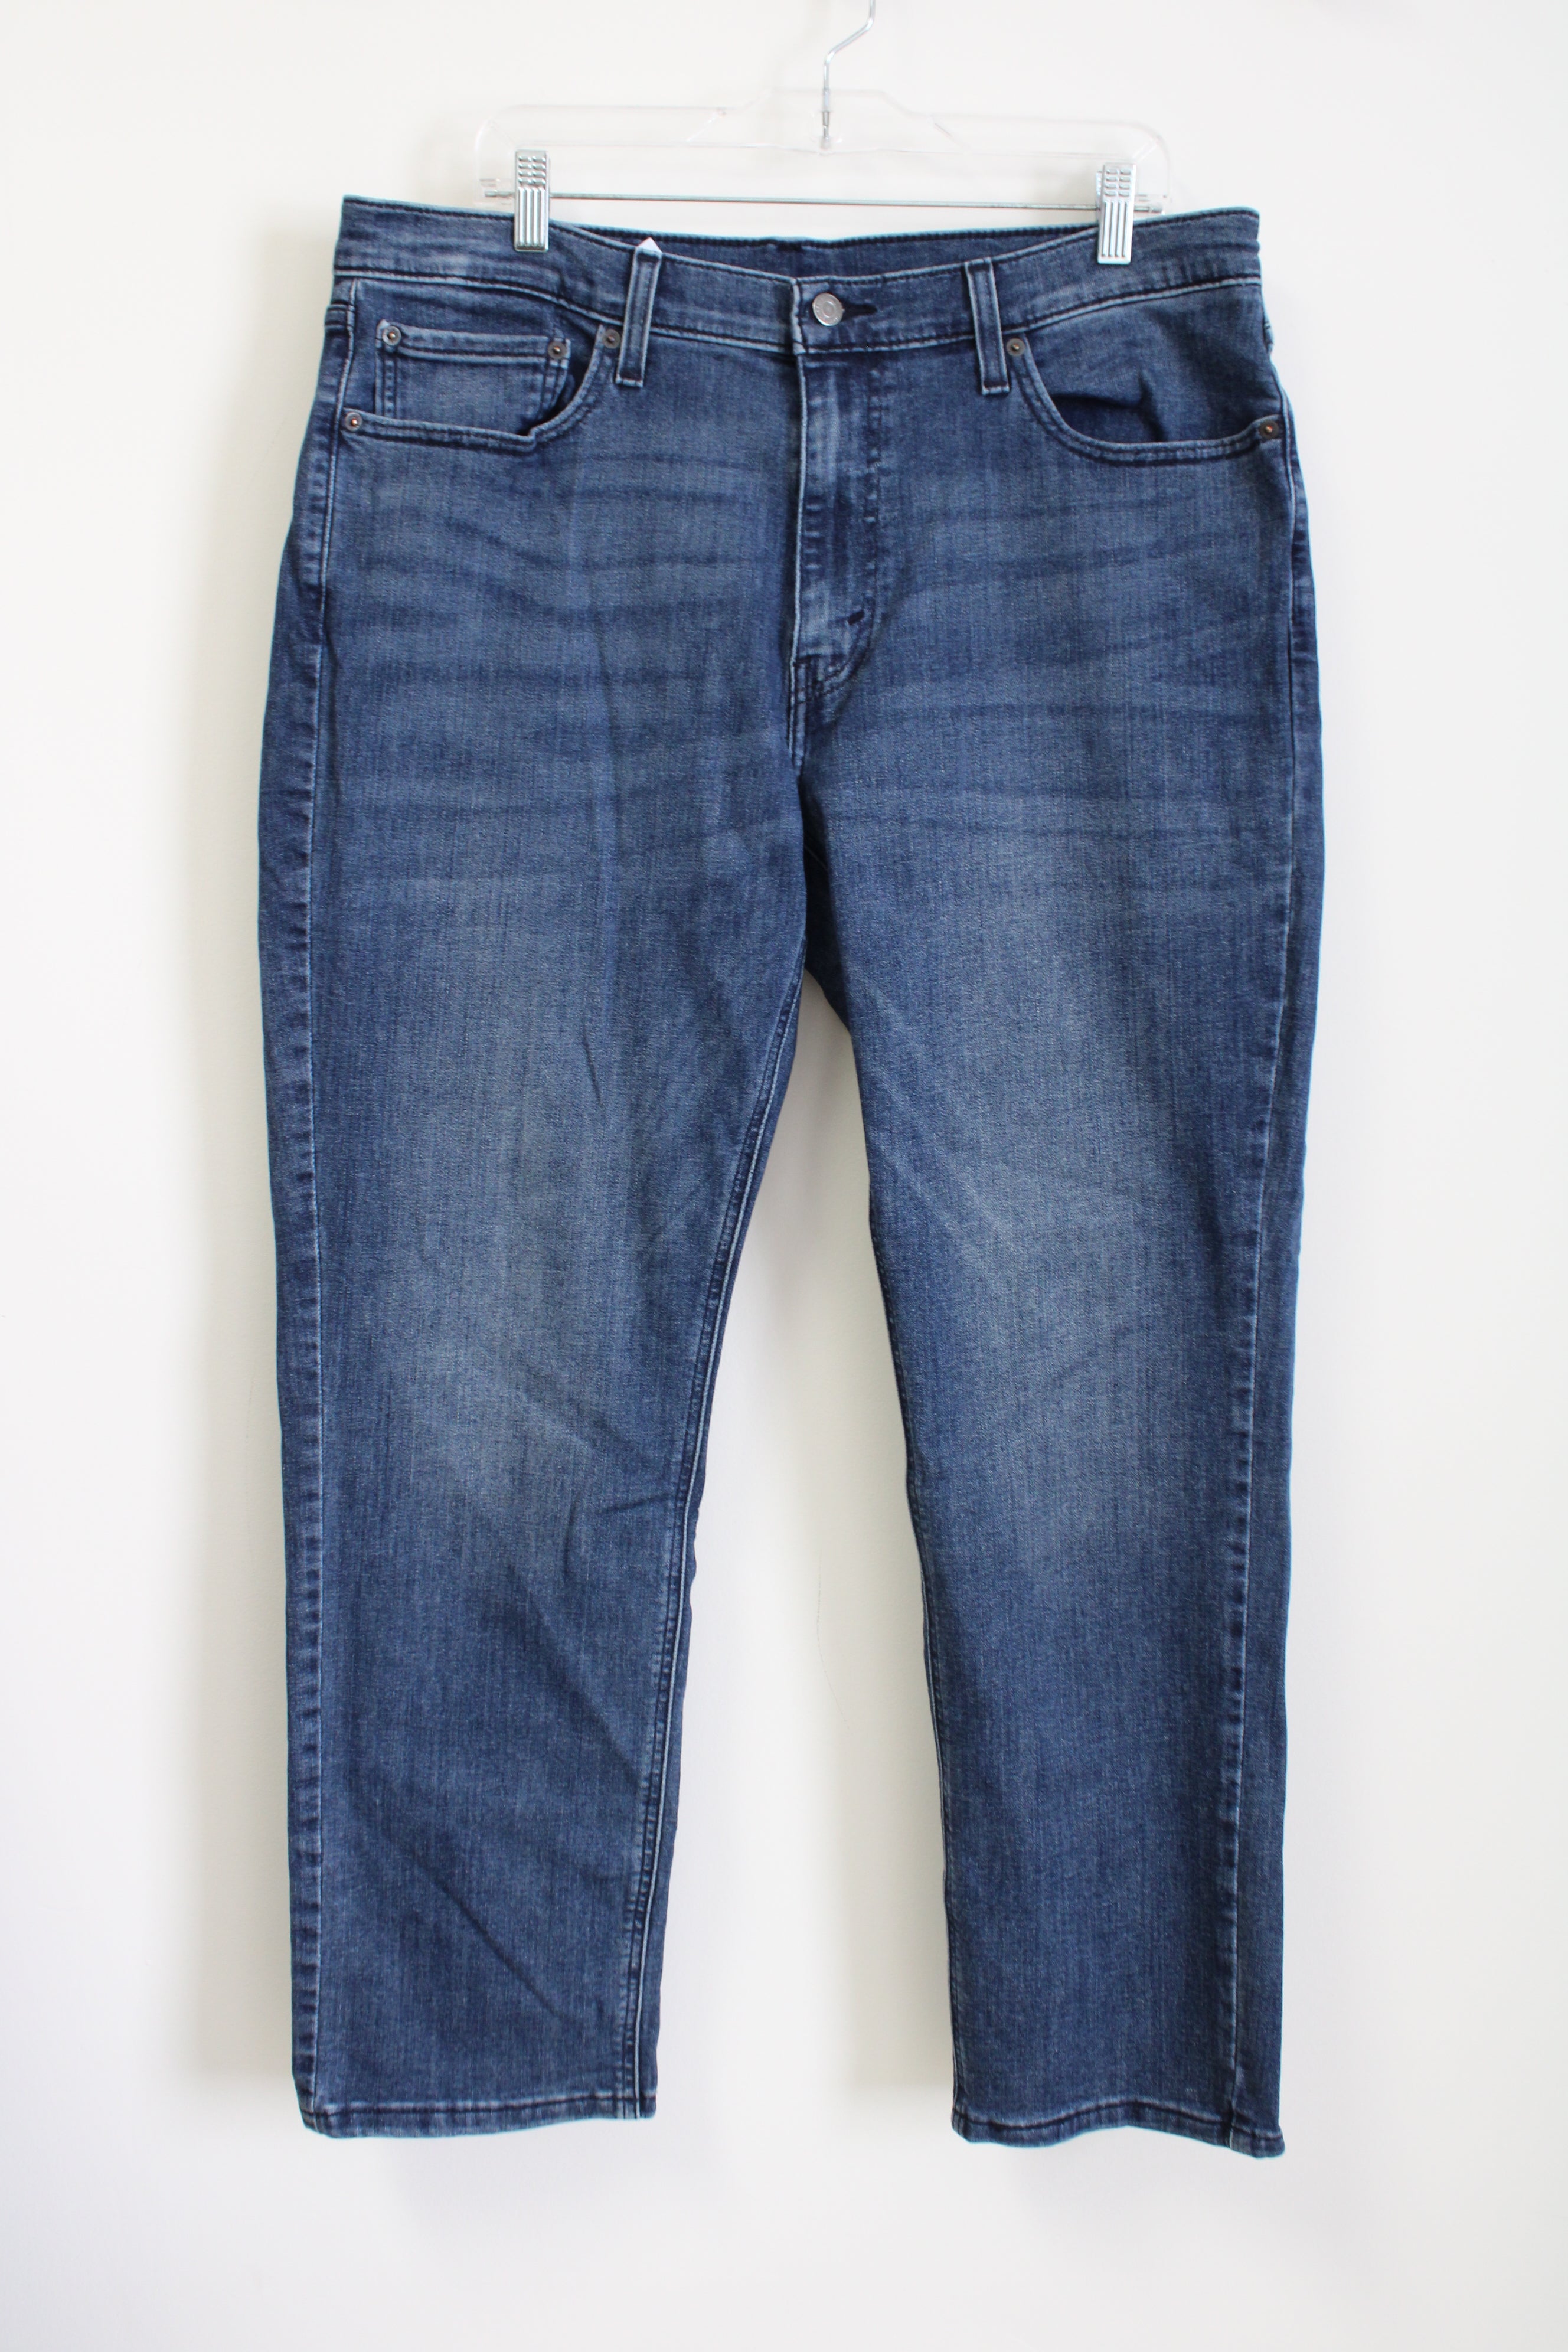 Levi Strauss 541 Dark Wash Jeans | 36X32